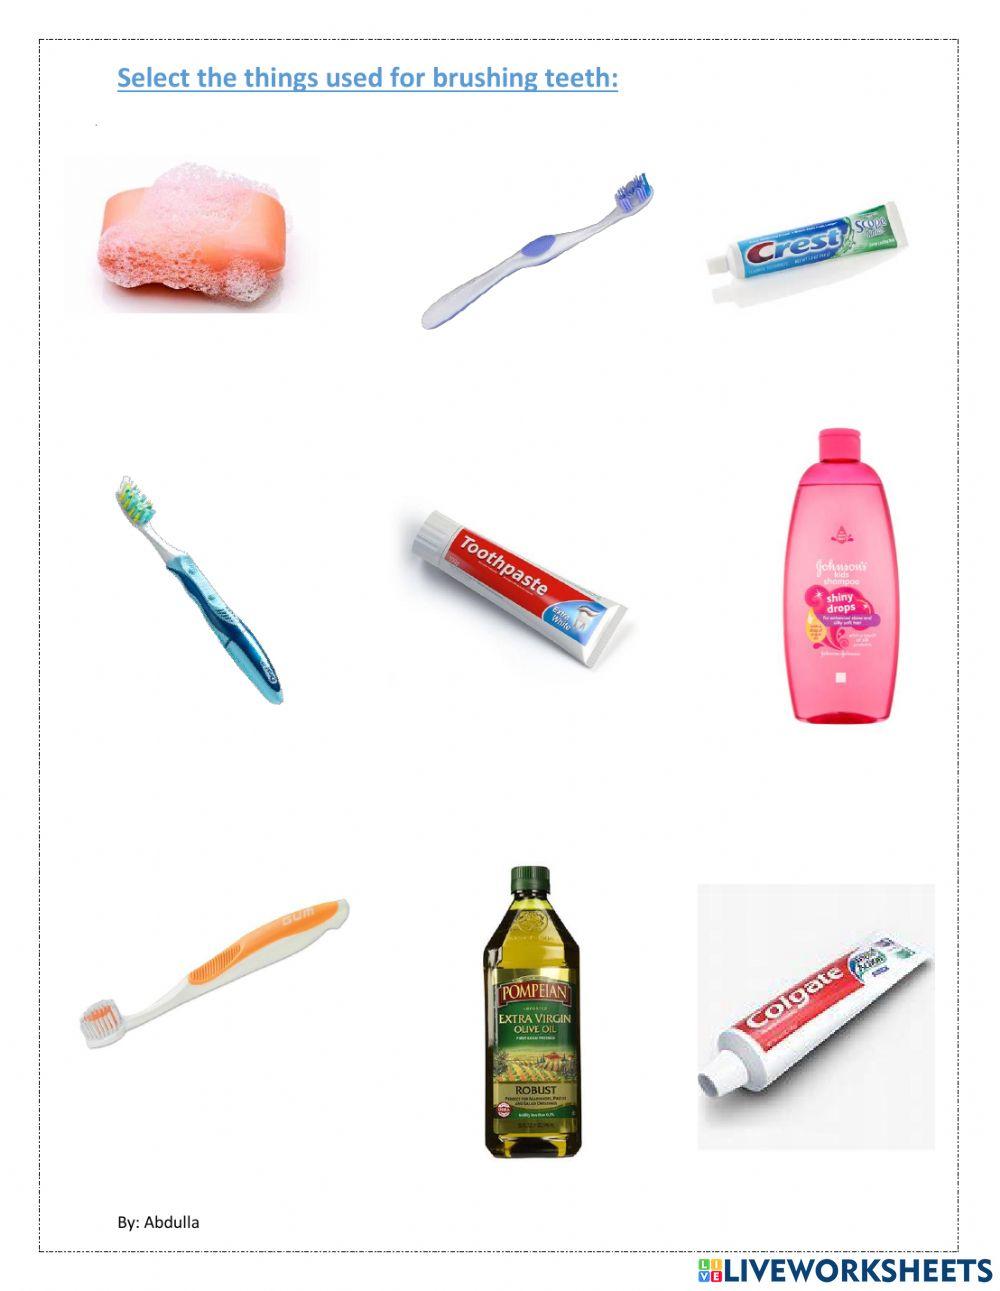 Things used for brushing teeth